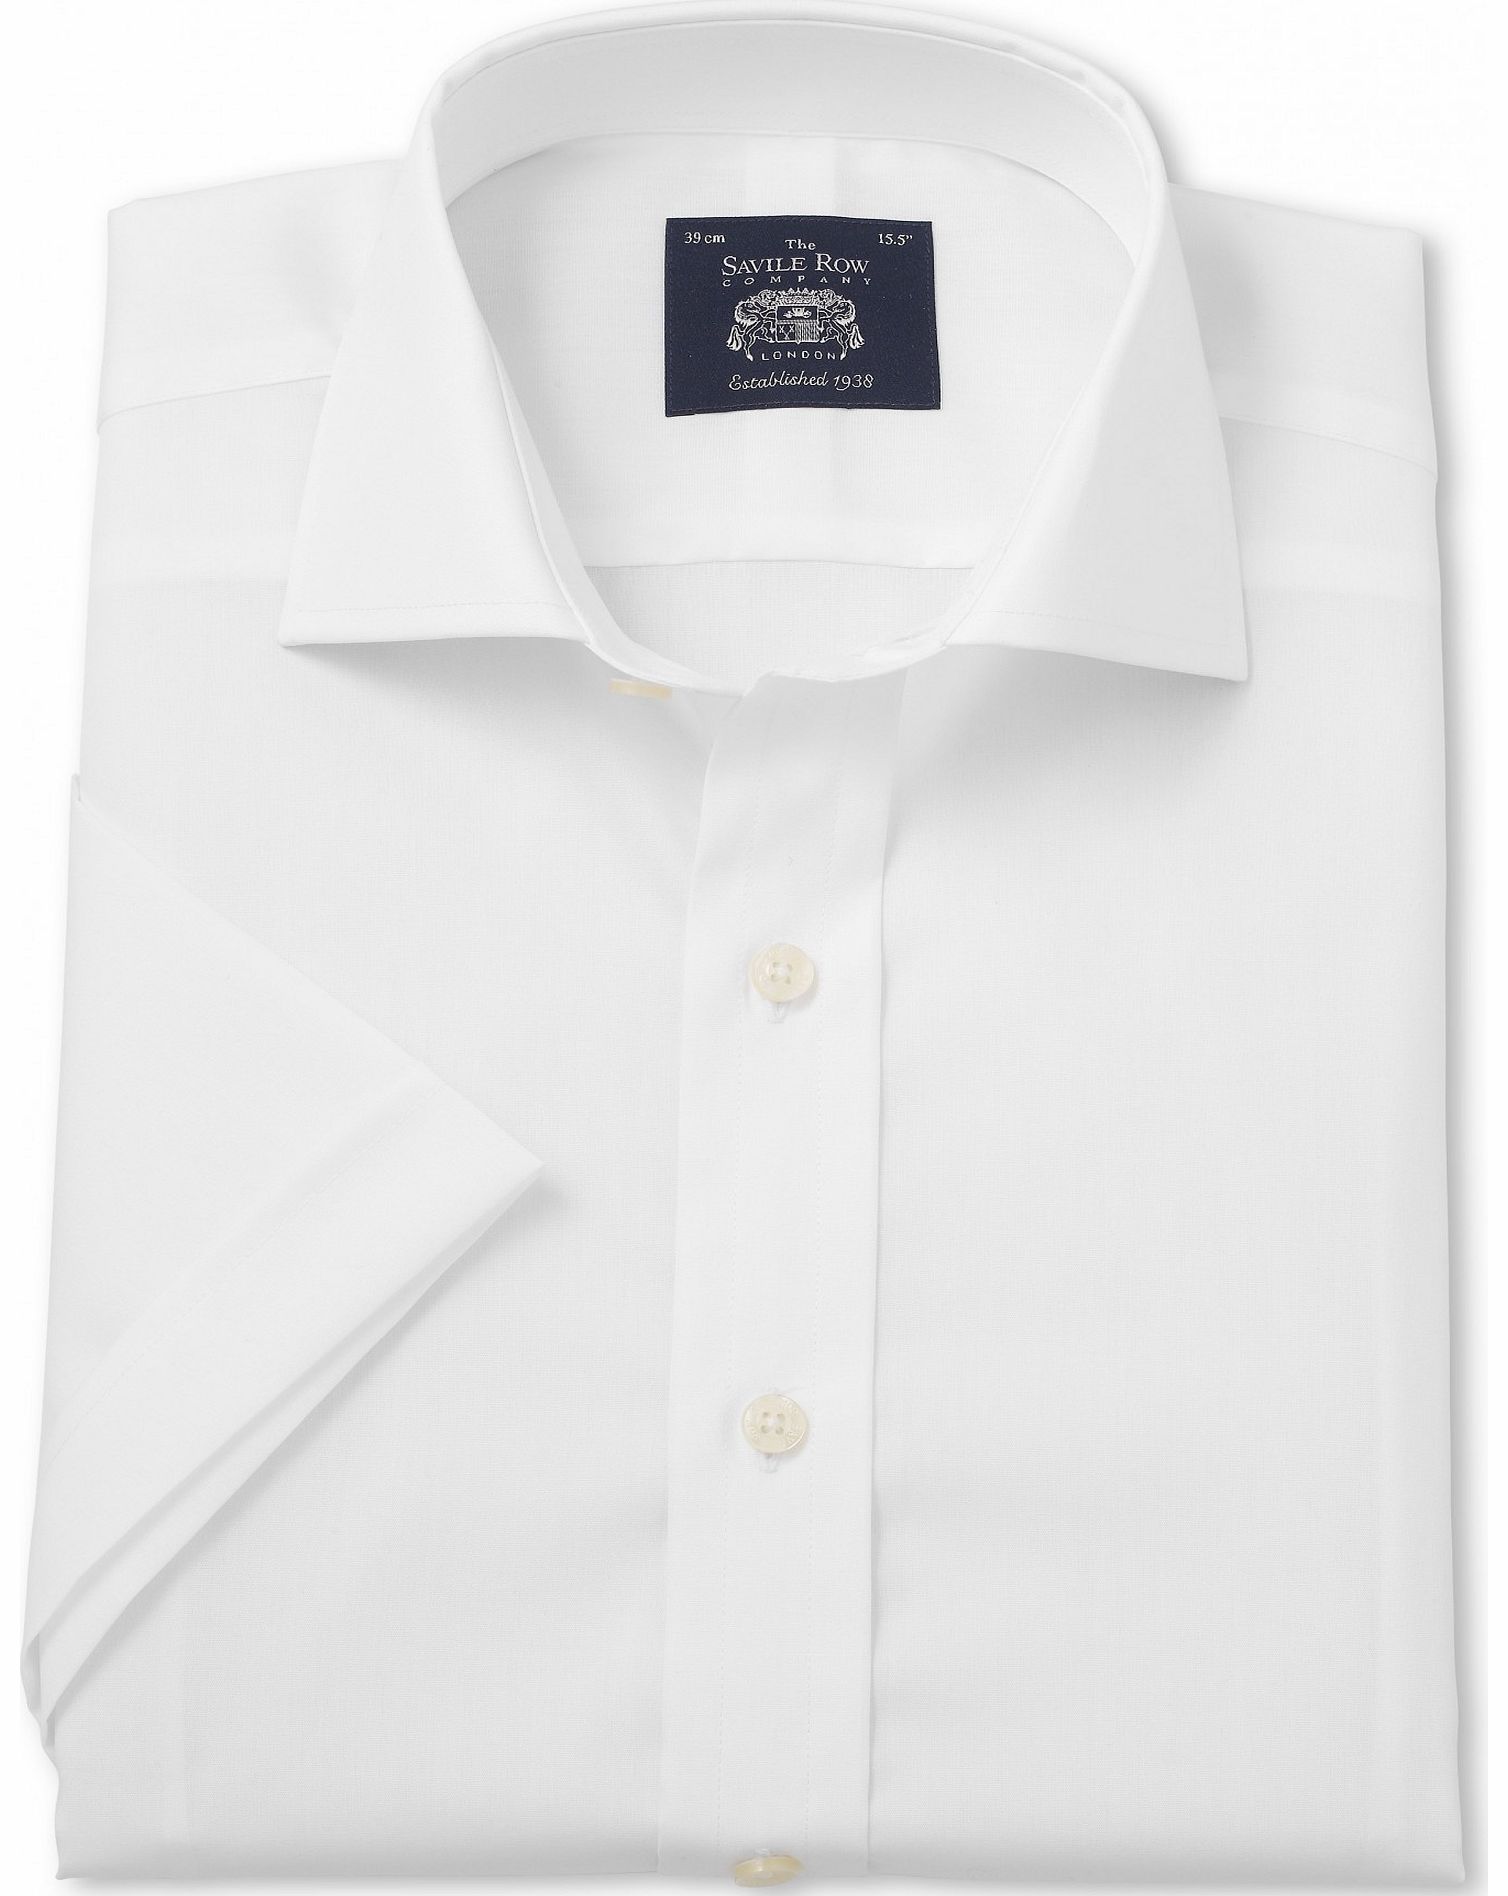 White Slim Fit Short Sleeve Shirt 18`` Short